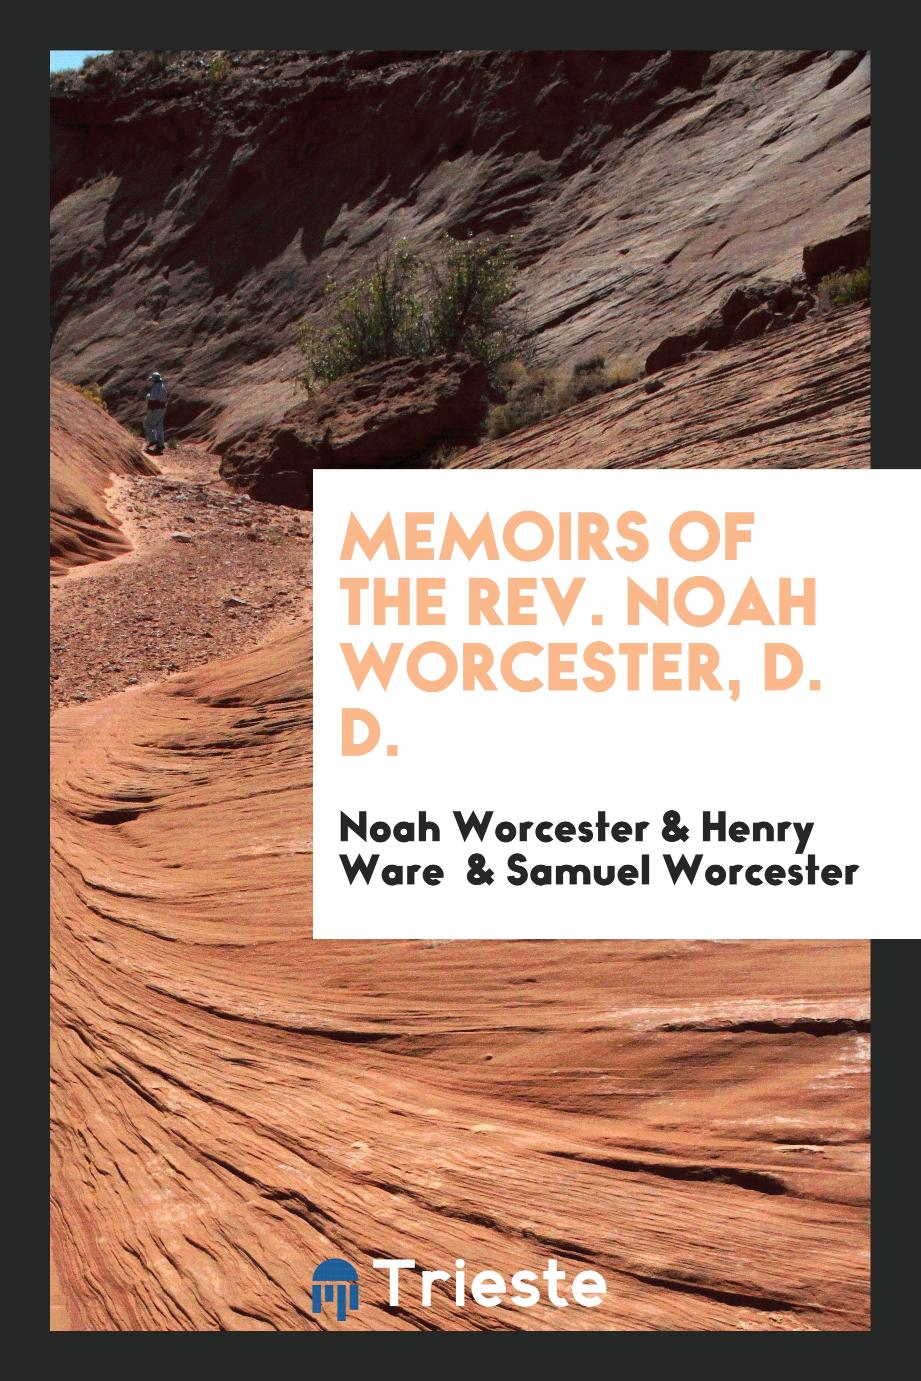 Memoirs of the Rev. Noah Worcester, D. D.